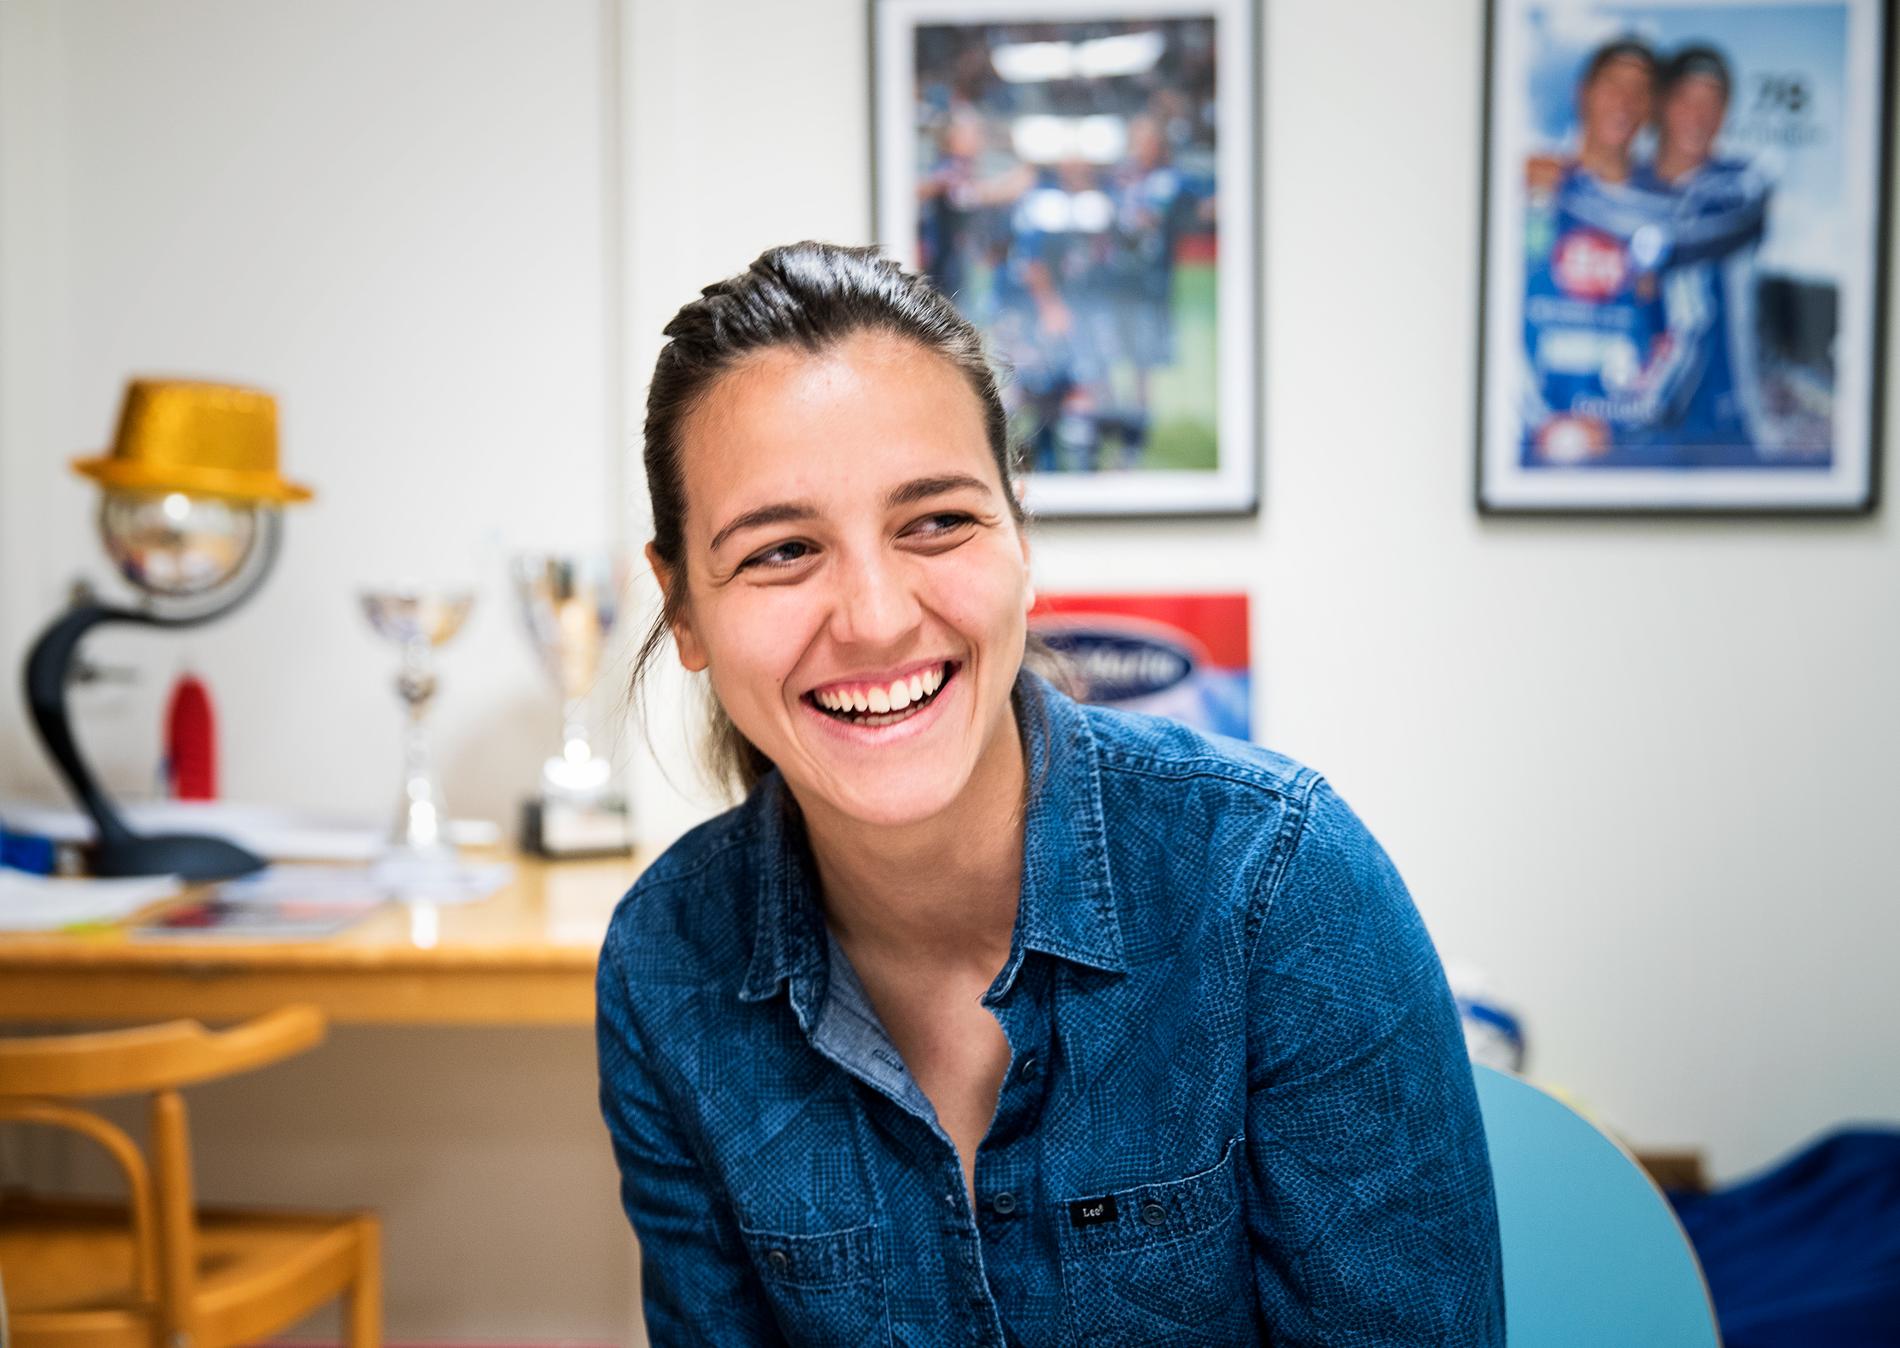 "För mig handlar det om att utvecklas så mycket som möjligt för att hjälpa laget", säger Marija Banusic.